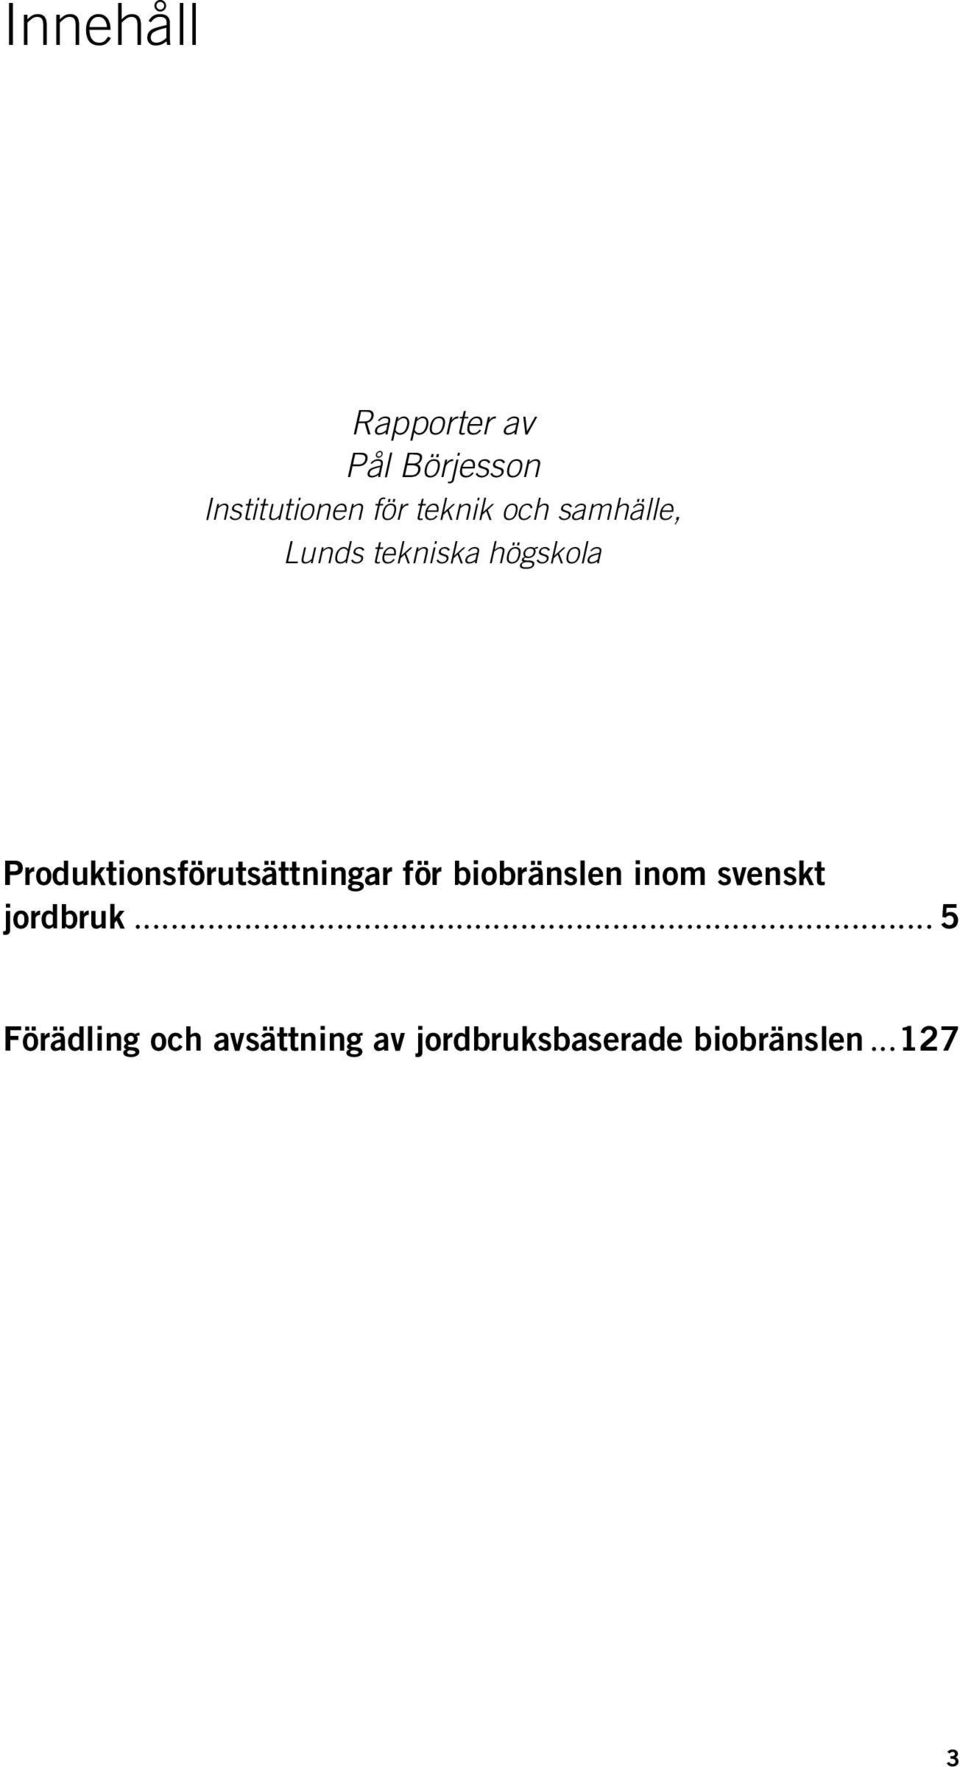 Produktionsförutsättningar för biobränslen inom svenskt